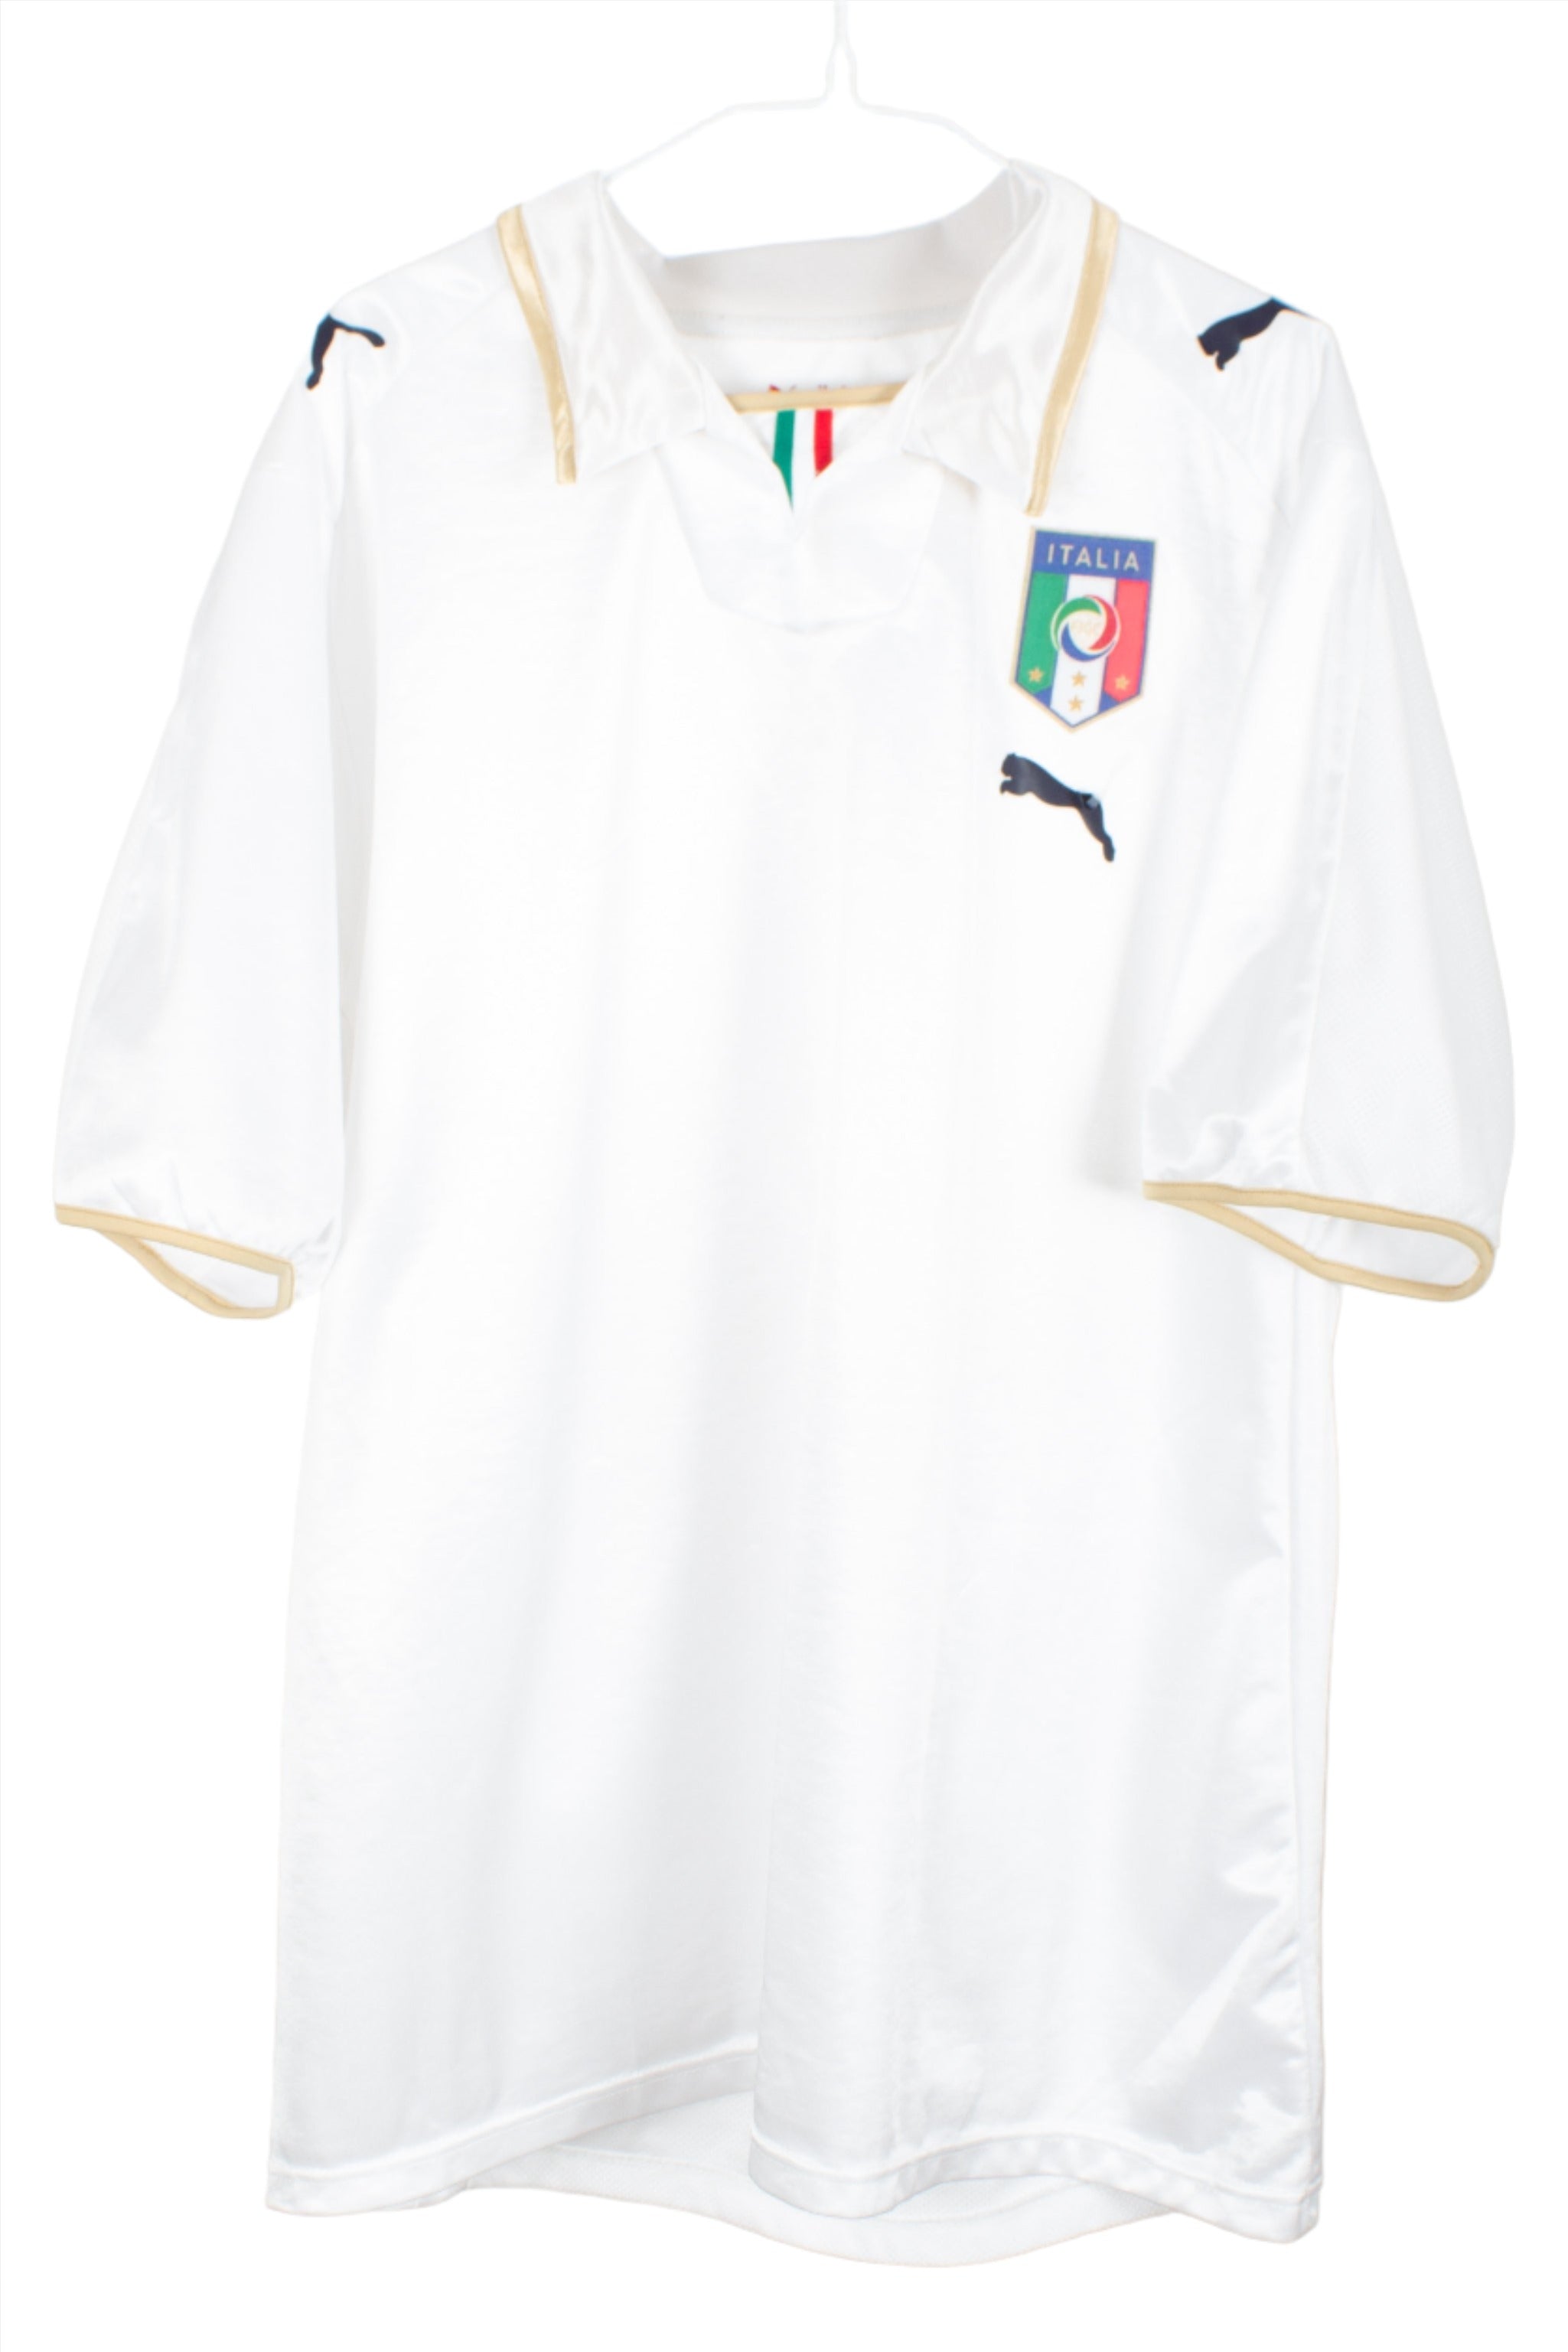 Italy 2008 Away Shirt (XL)